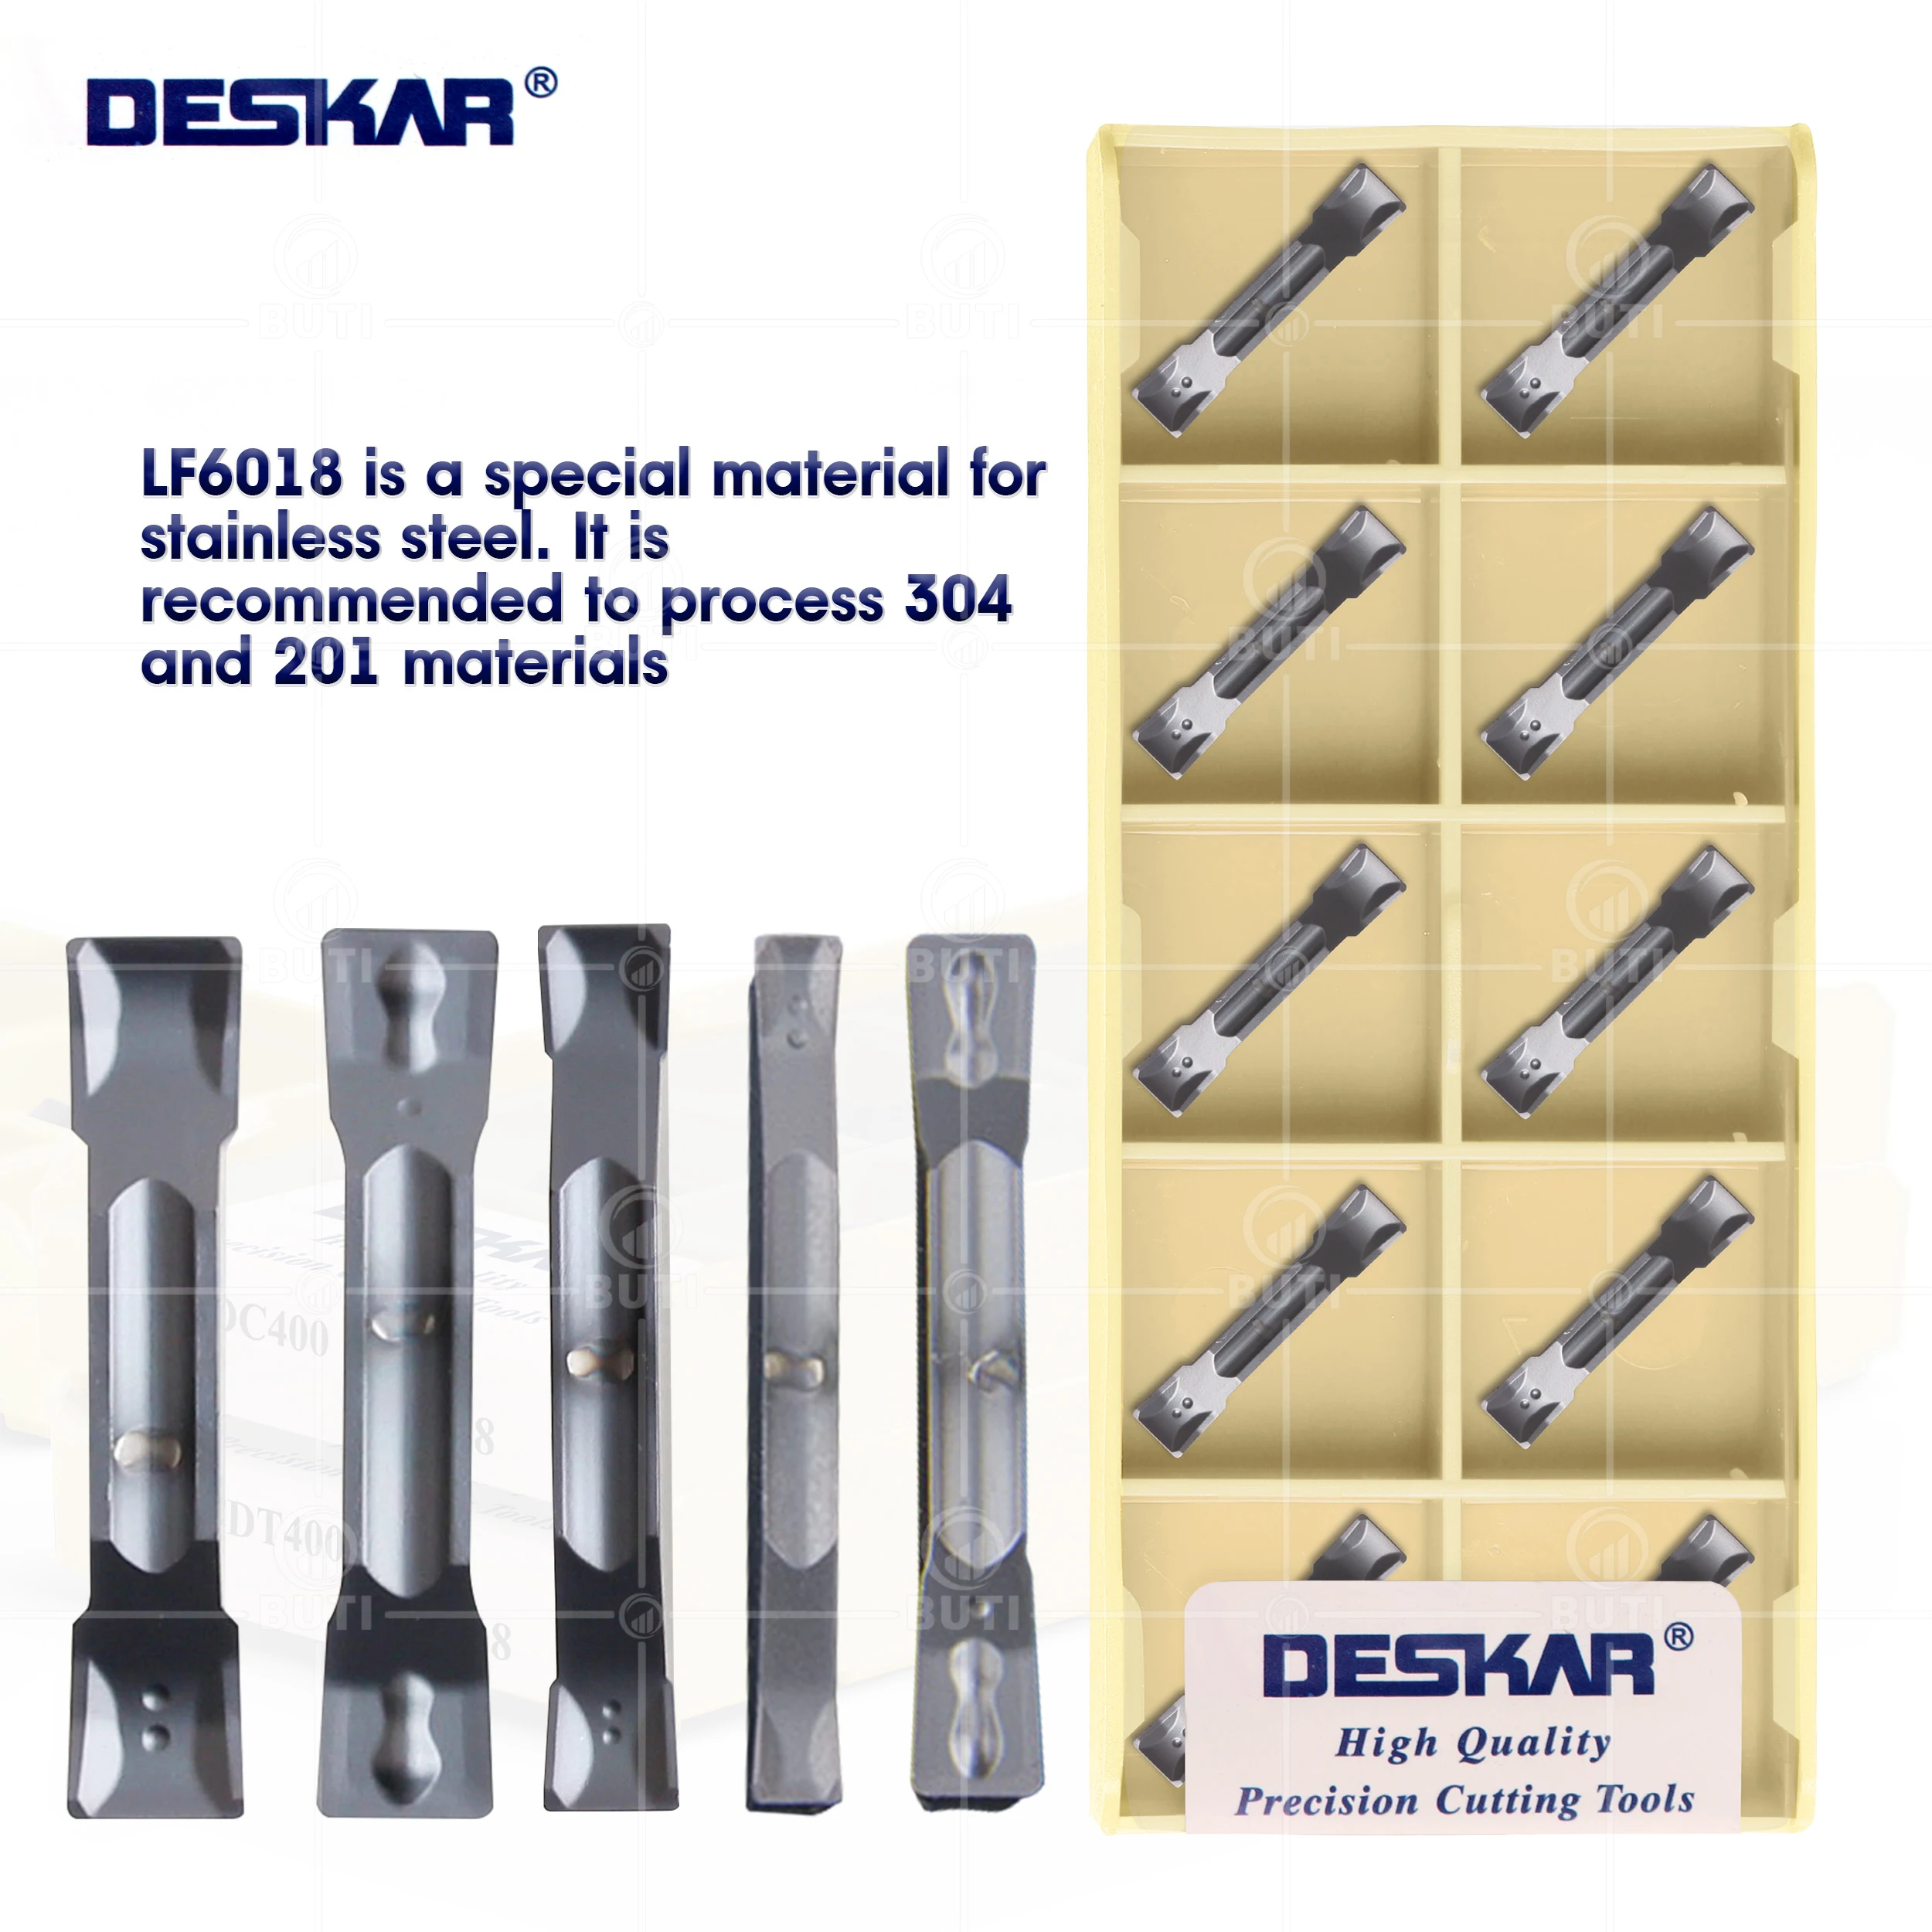 

DESKAR 100% Original TDC200 TDC3 TDC4 TDT2 TDT3 TDT4 LF6018 CNC Lathe Cutter Blades Grooving Carbide Inserts For Stainless Steel